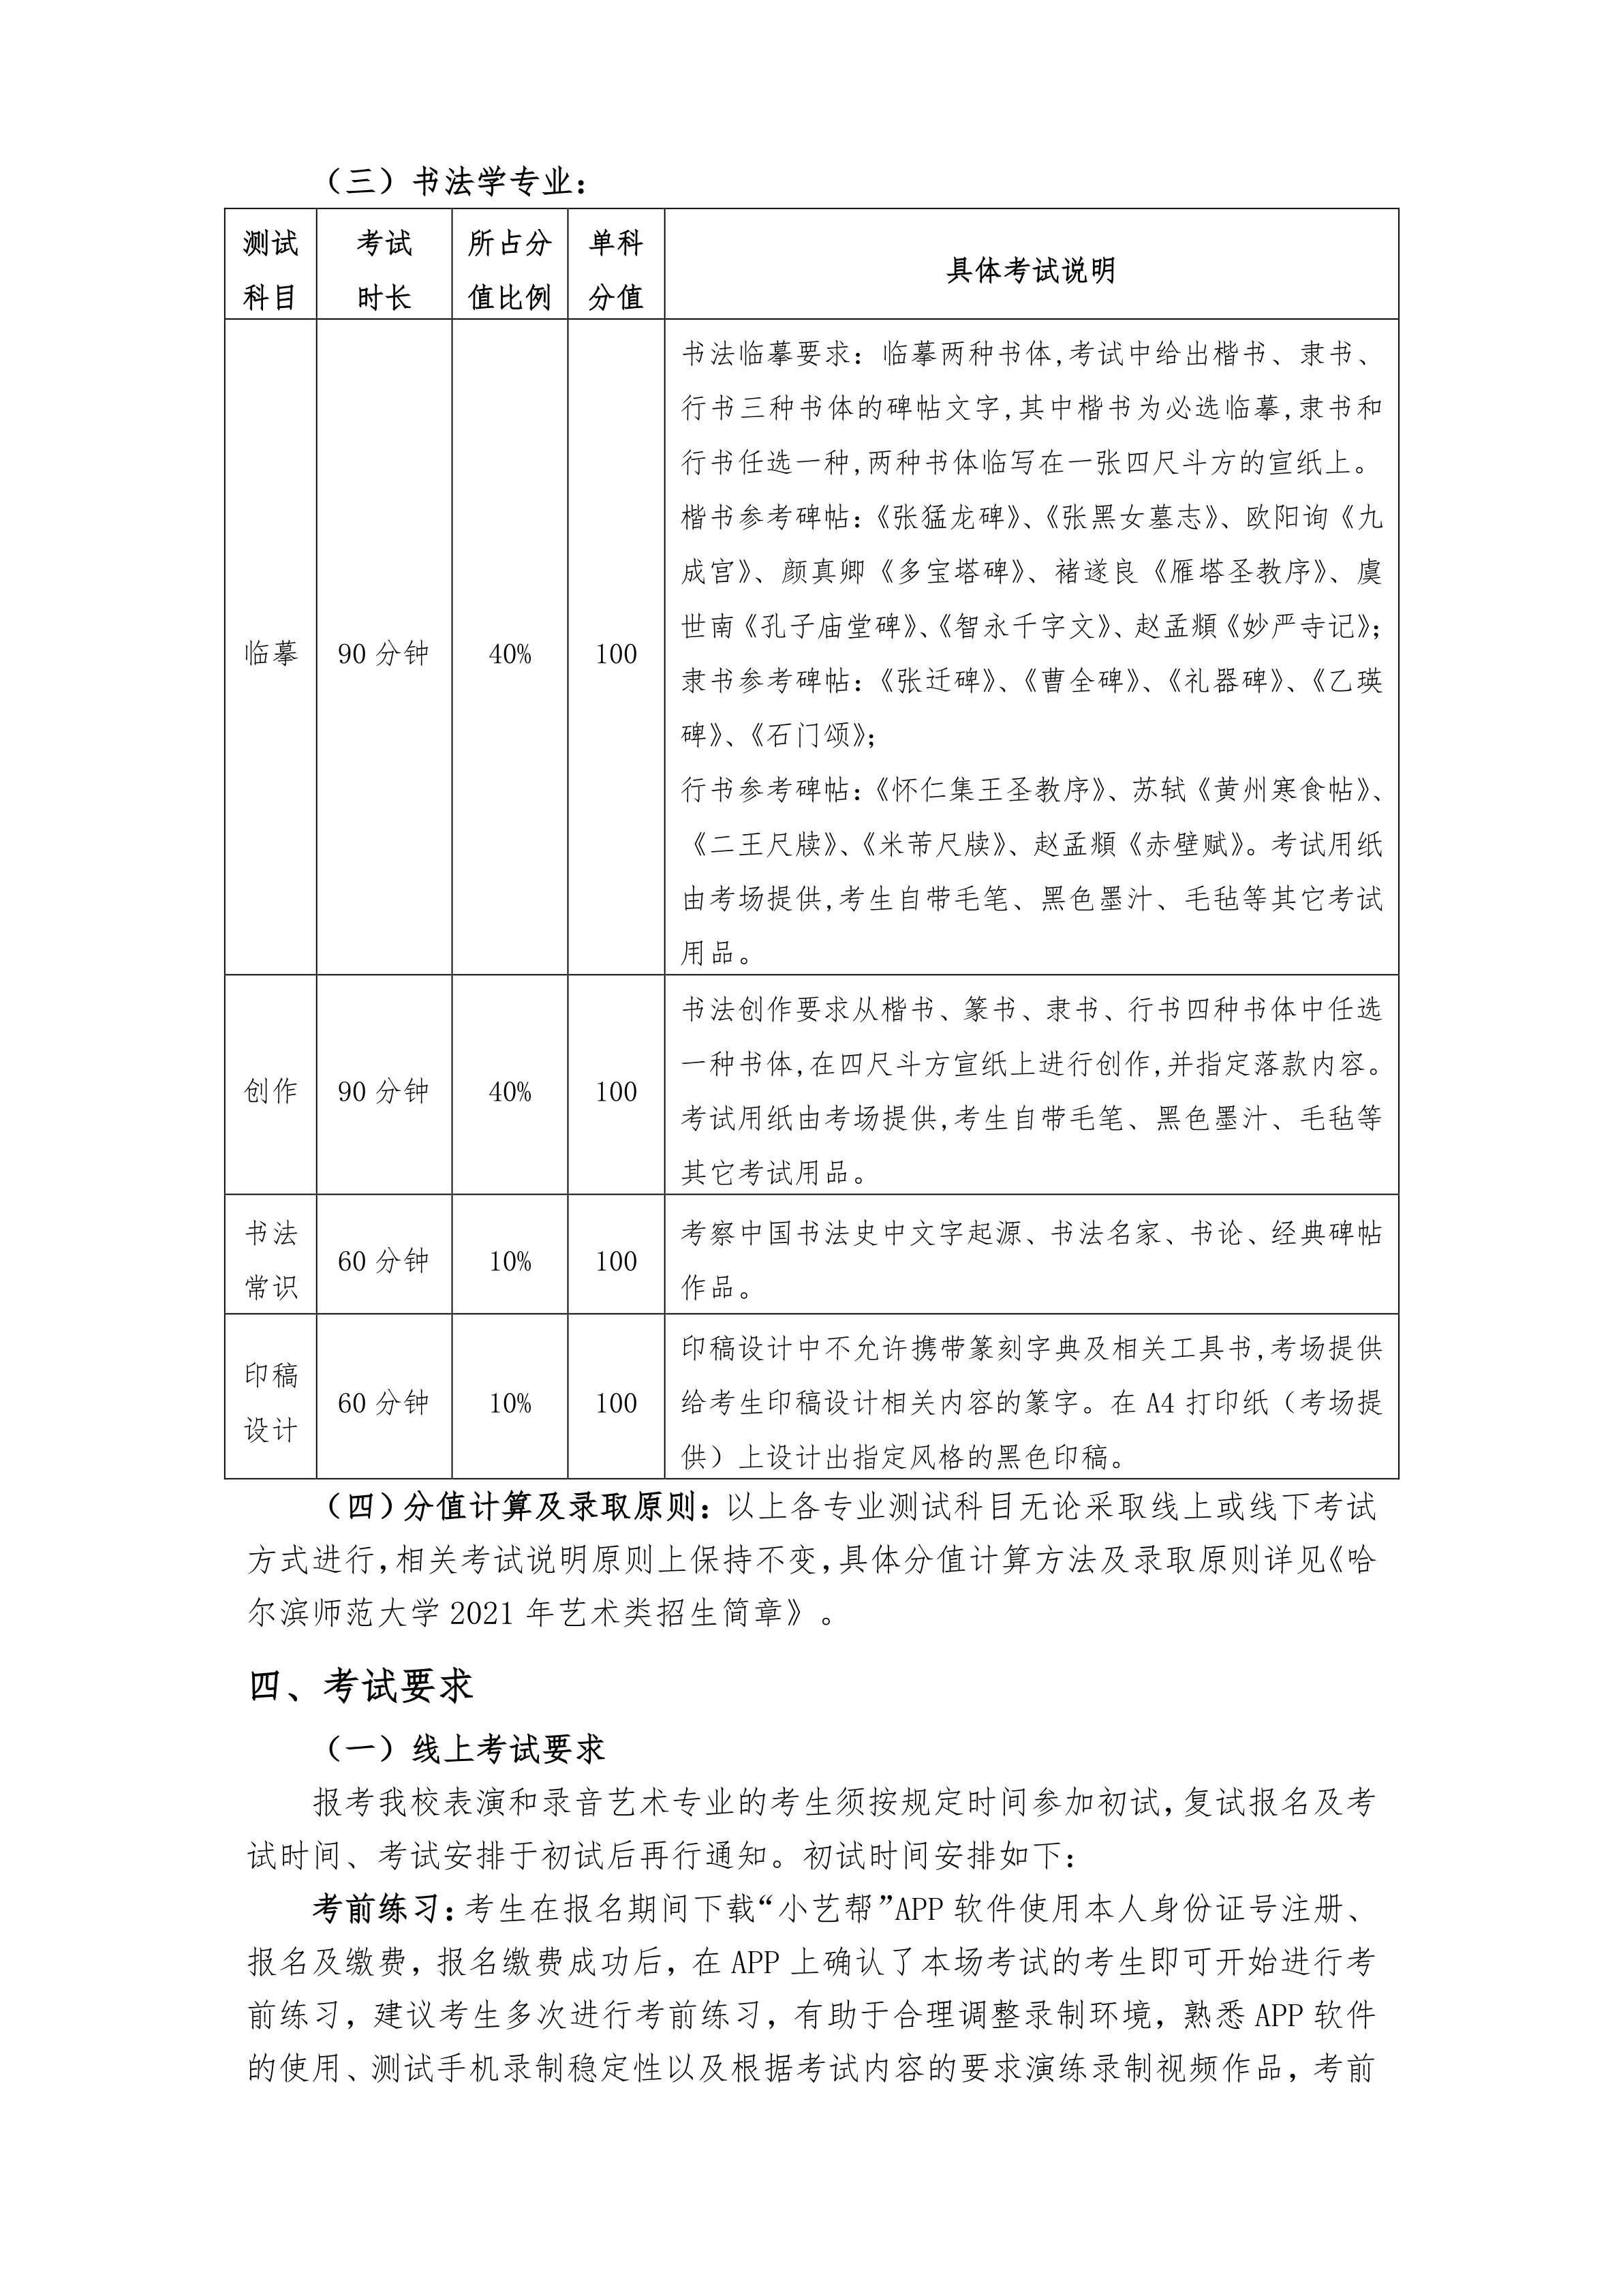 000-关于哈尔滨师范大学2021年在黑龙江省艺术类专业校考的通知_3.png